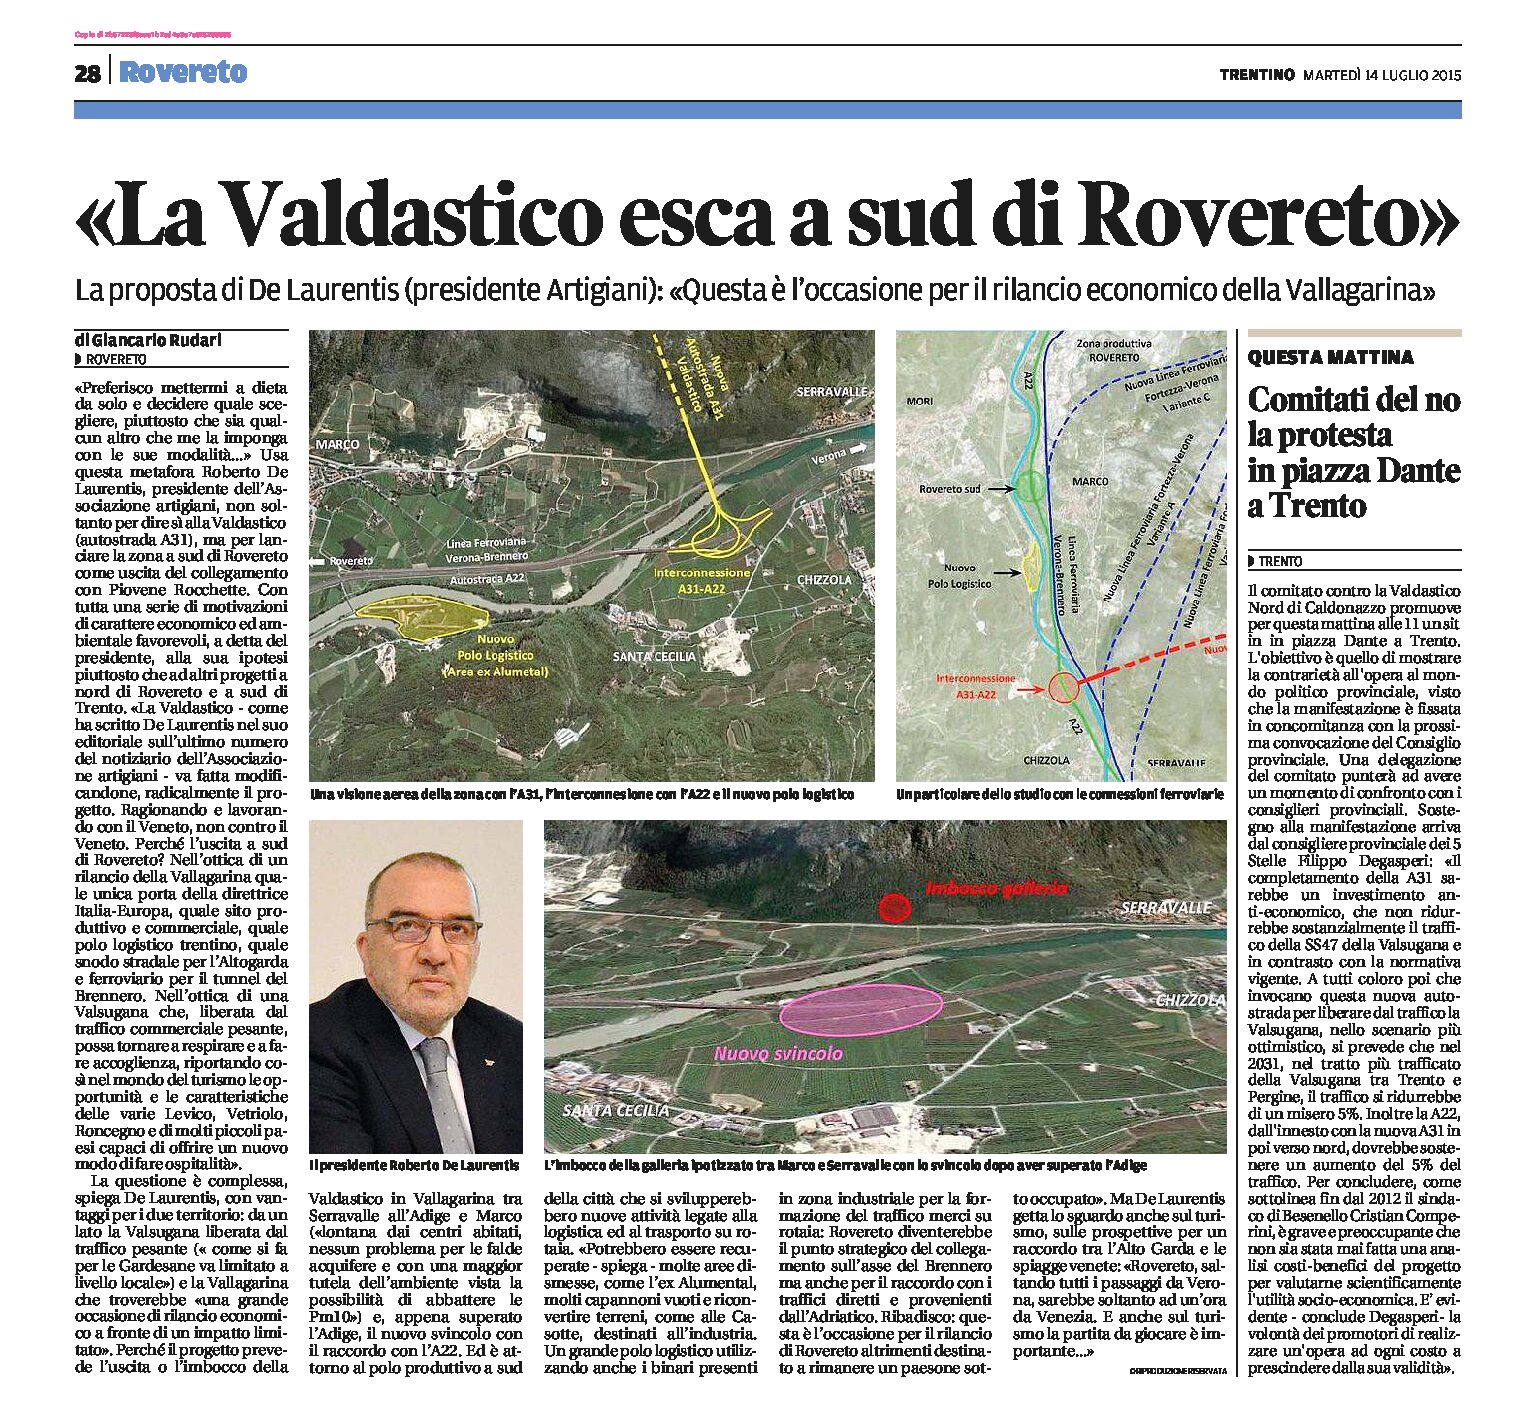 Valdastico: il presidente degli Artigiani “la Valdastico esca a sud di Rovereto”